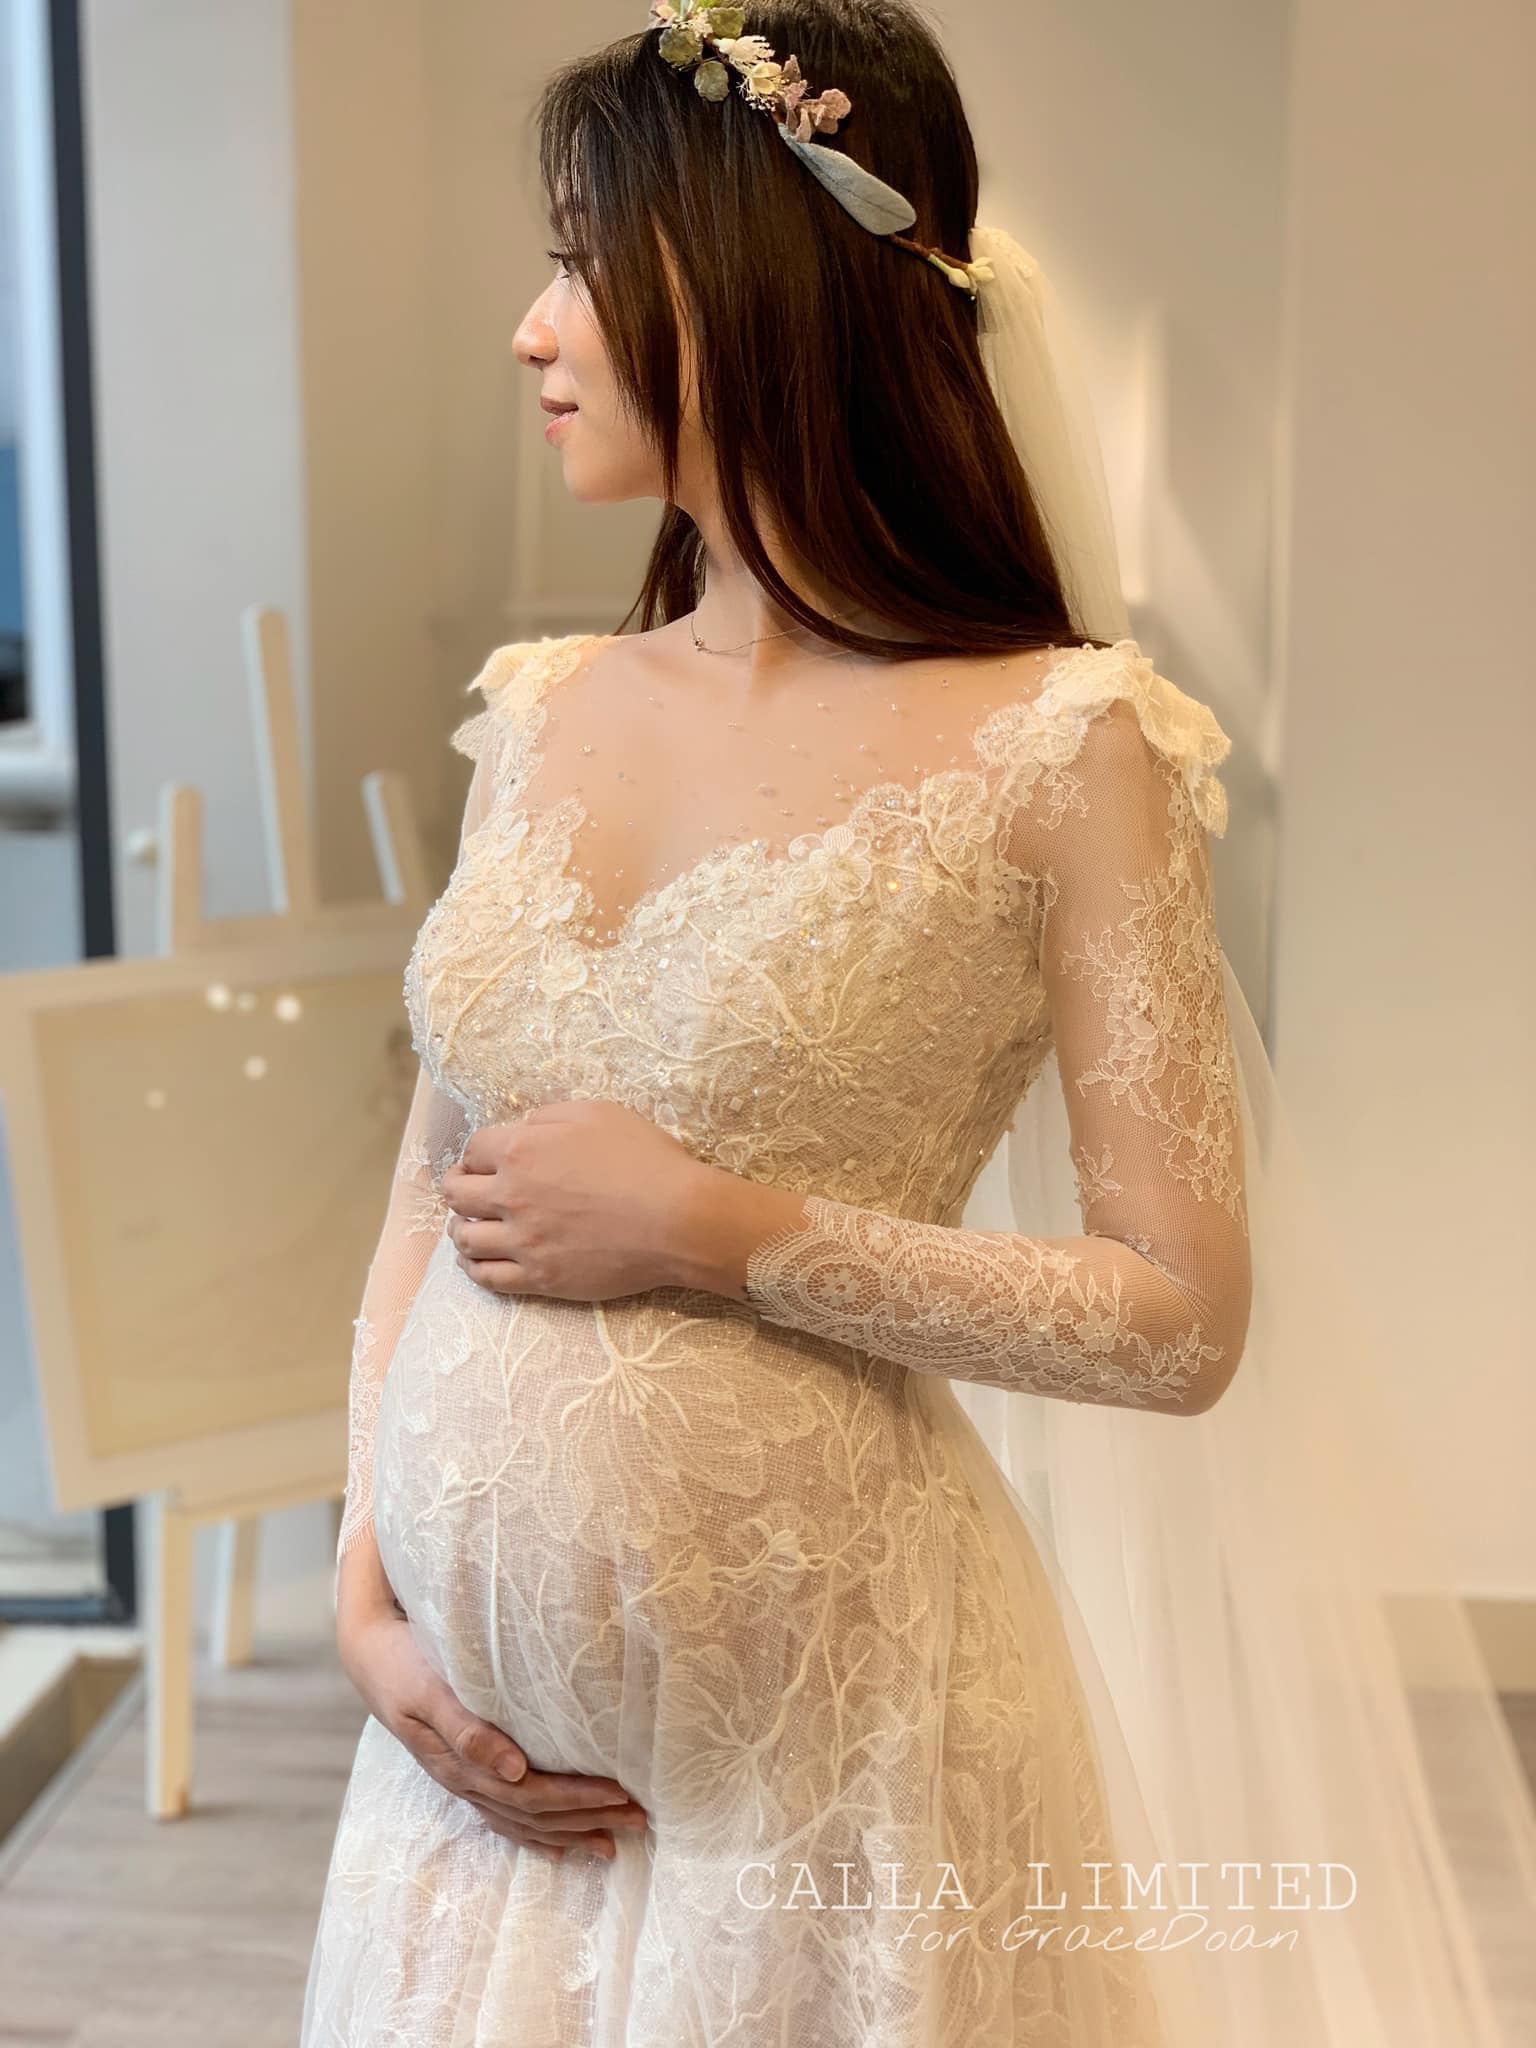 Váy cưới bầu - Tìm kiếm kiểu dáng hoàn hảo cho từng thai kỳ